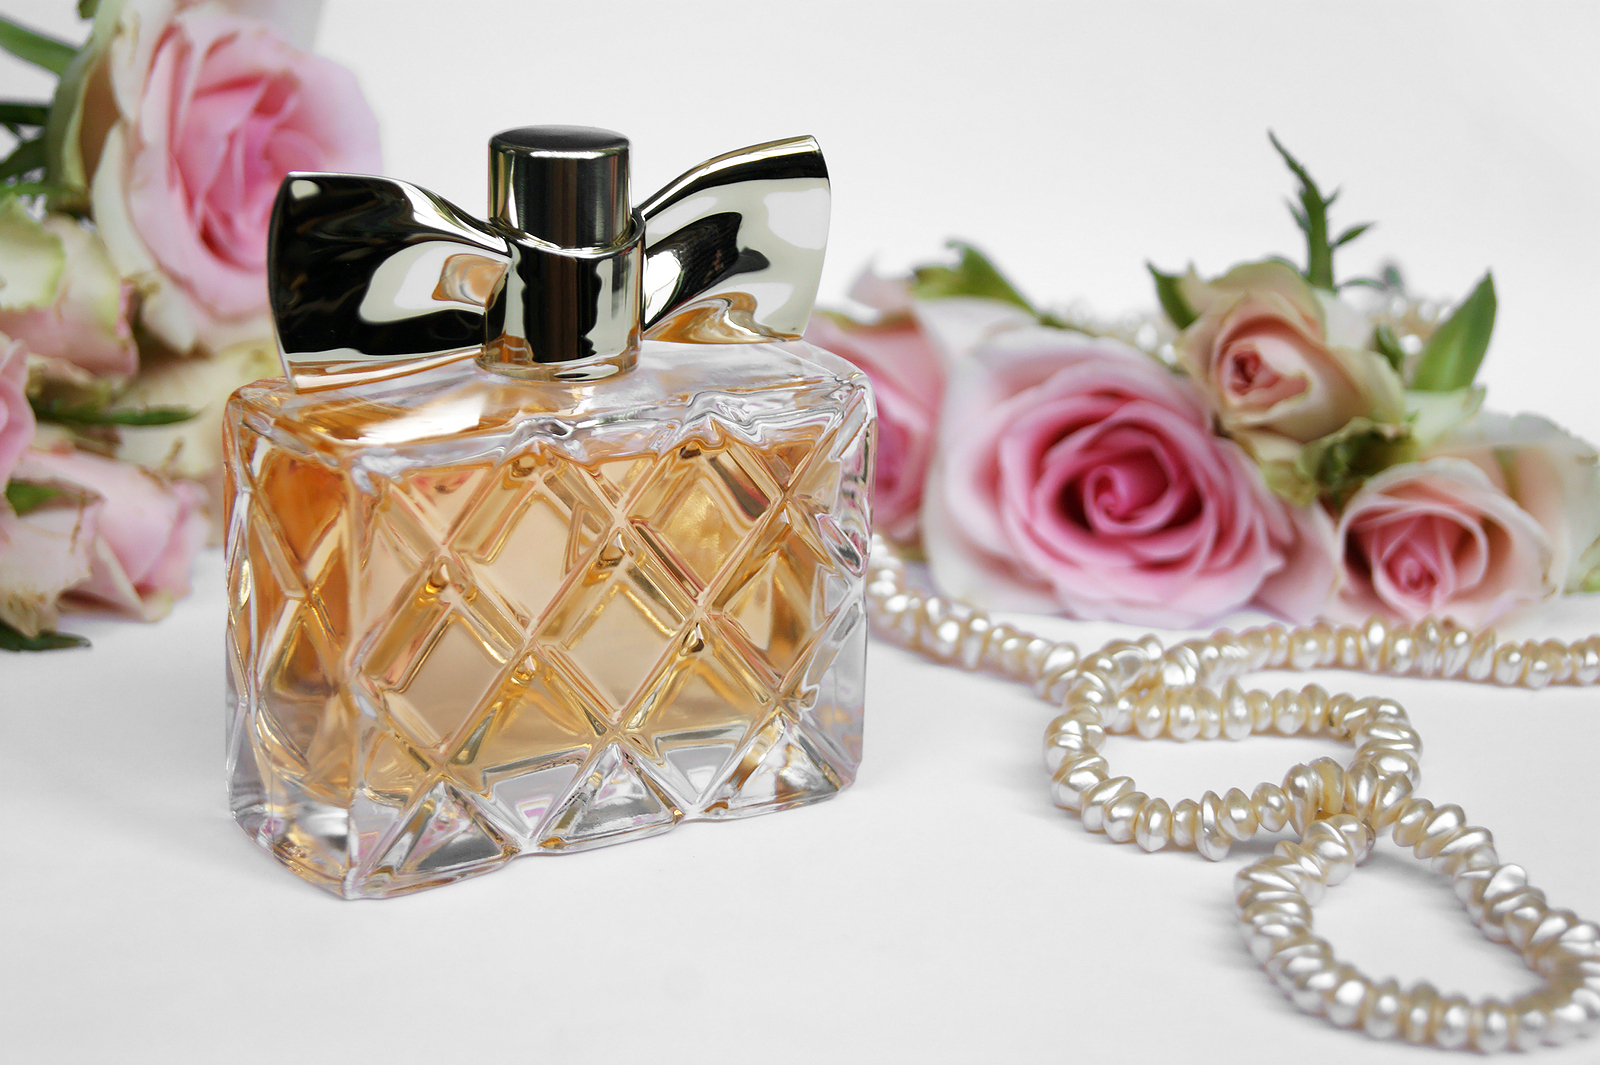 5 Real Benefits of Wearing Luxury Perfume